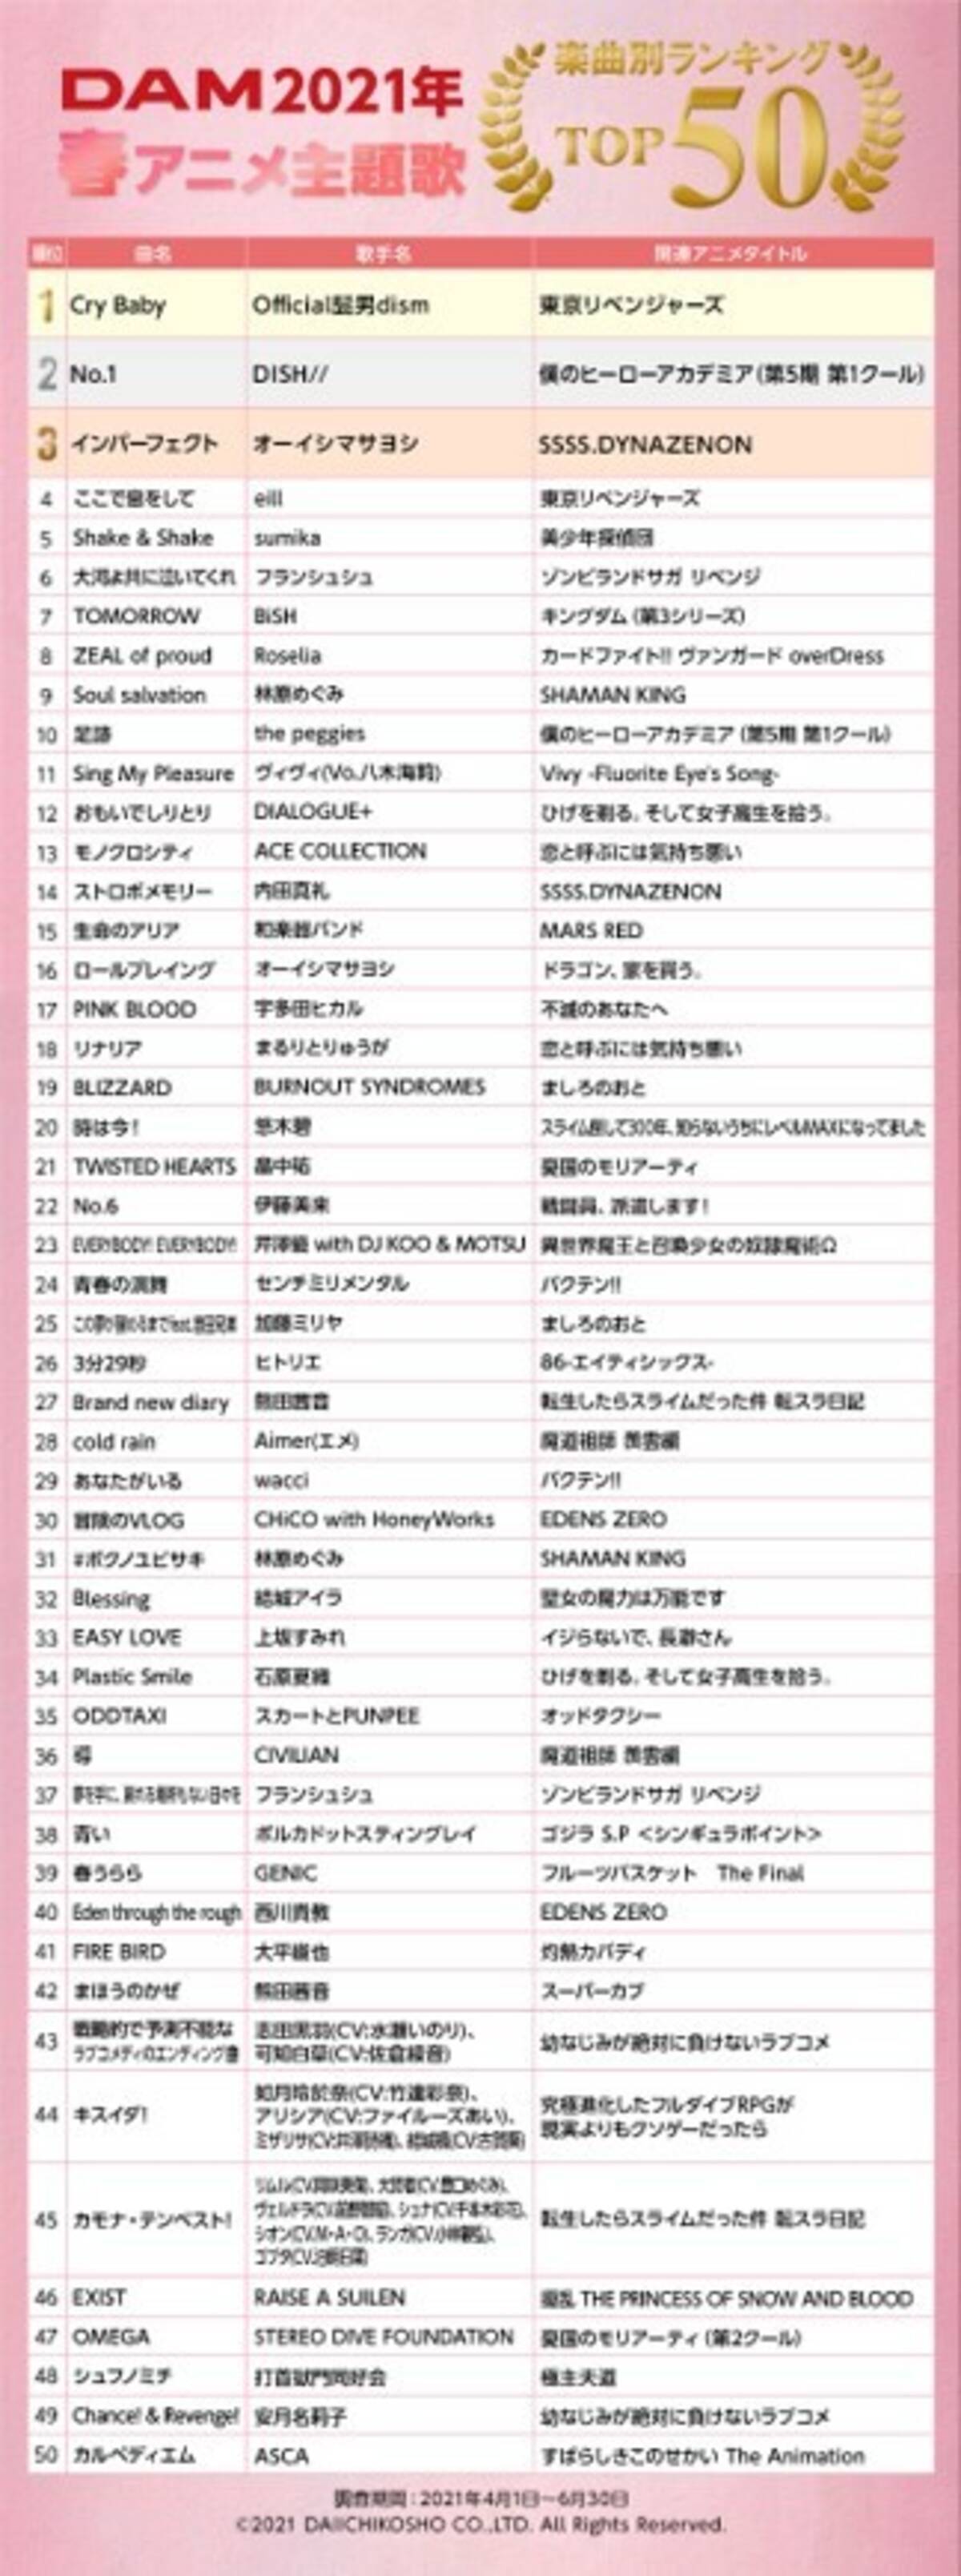 21年春アニメのカラオケランキングtop50 1位は 東京リベンジャーズ のop曲 Cry Baby 人気アニメ作品の主題歌が続々ランクイン 21年7月日 エキサイトニュース